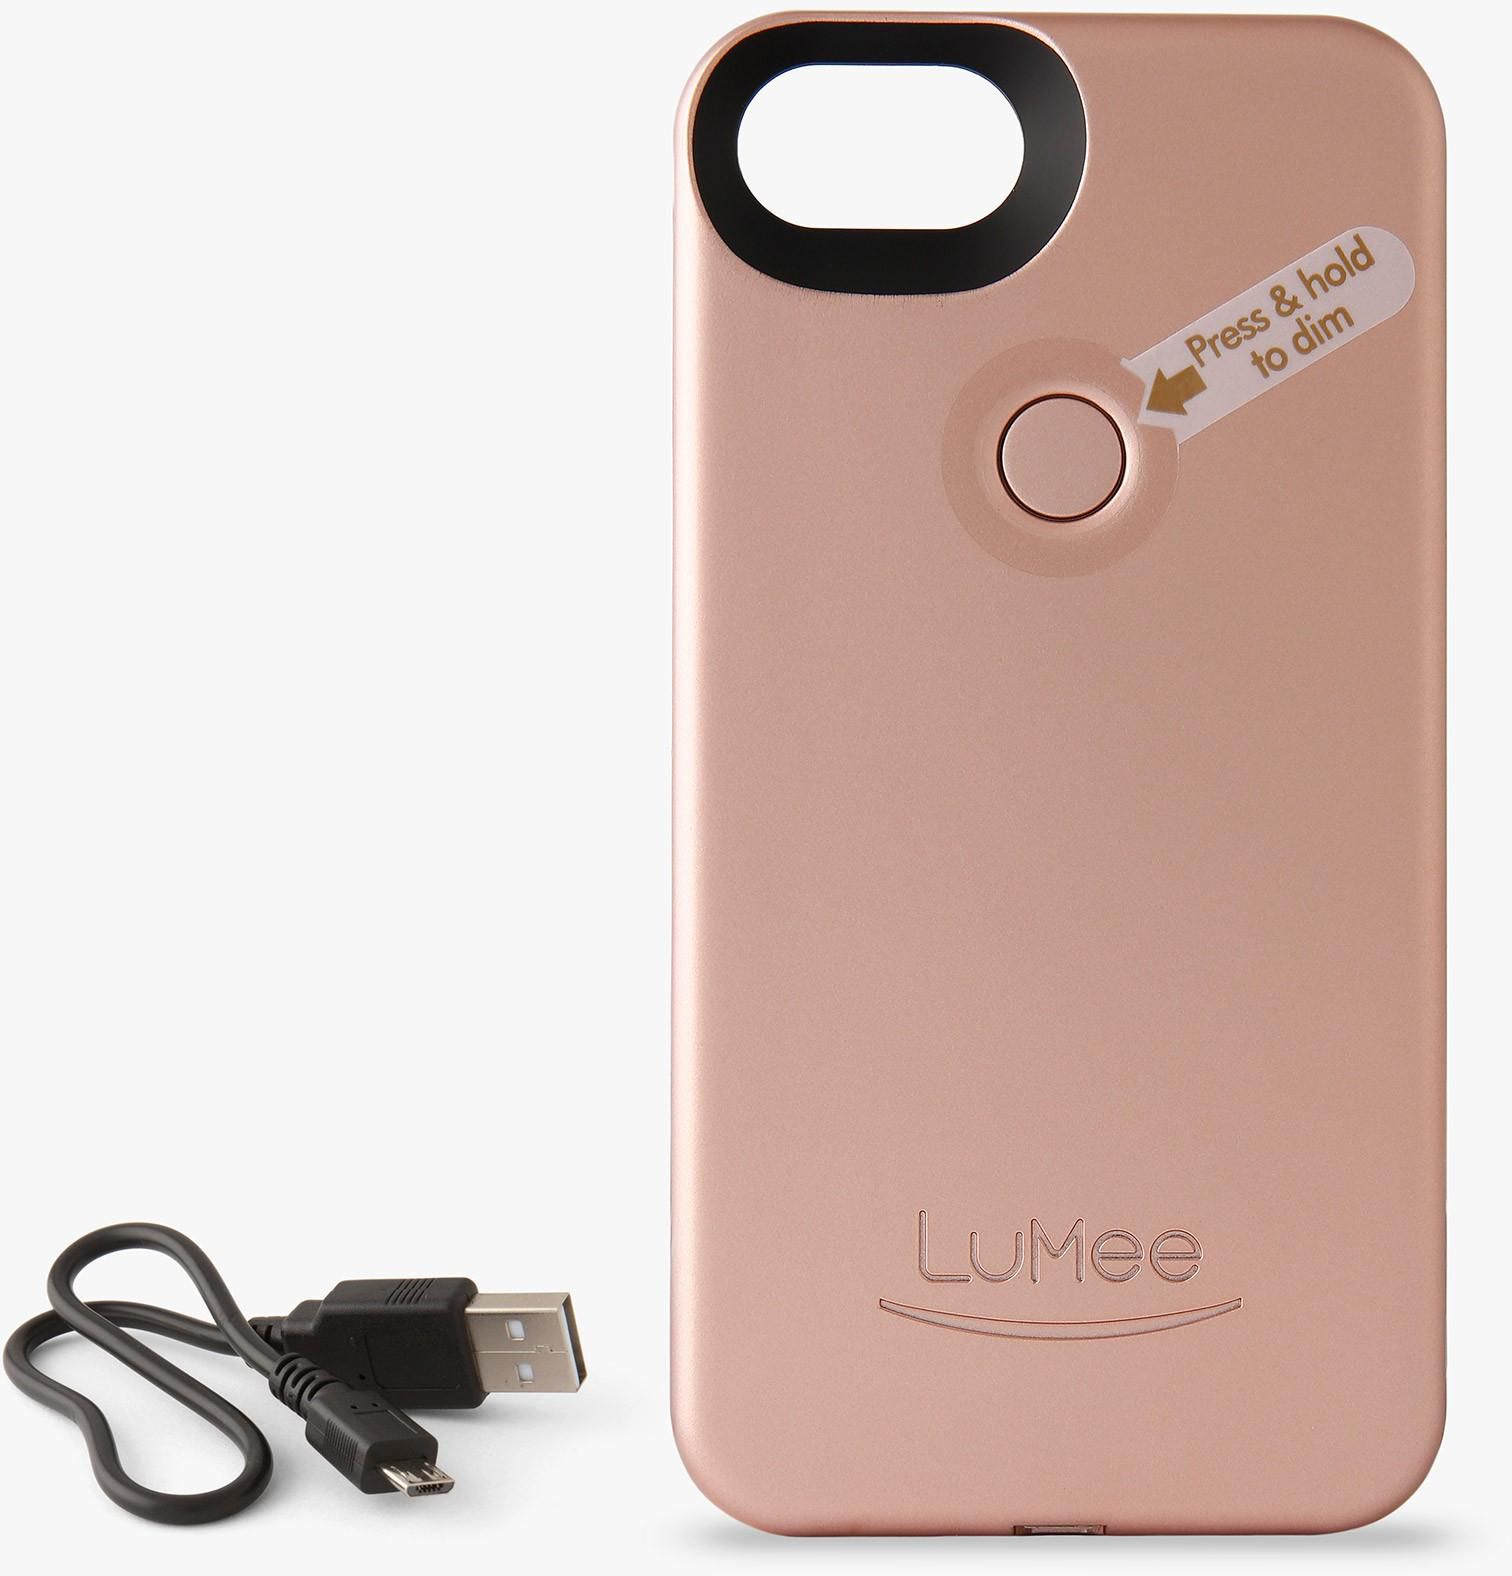 iPhone 7 Plus/6 Plus/6s Plus LuMee Two Phone Case